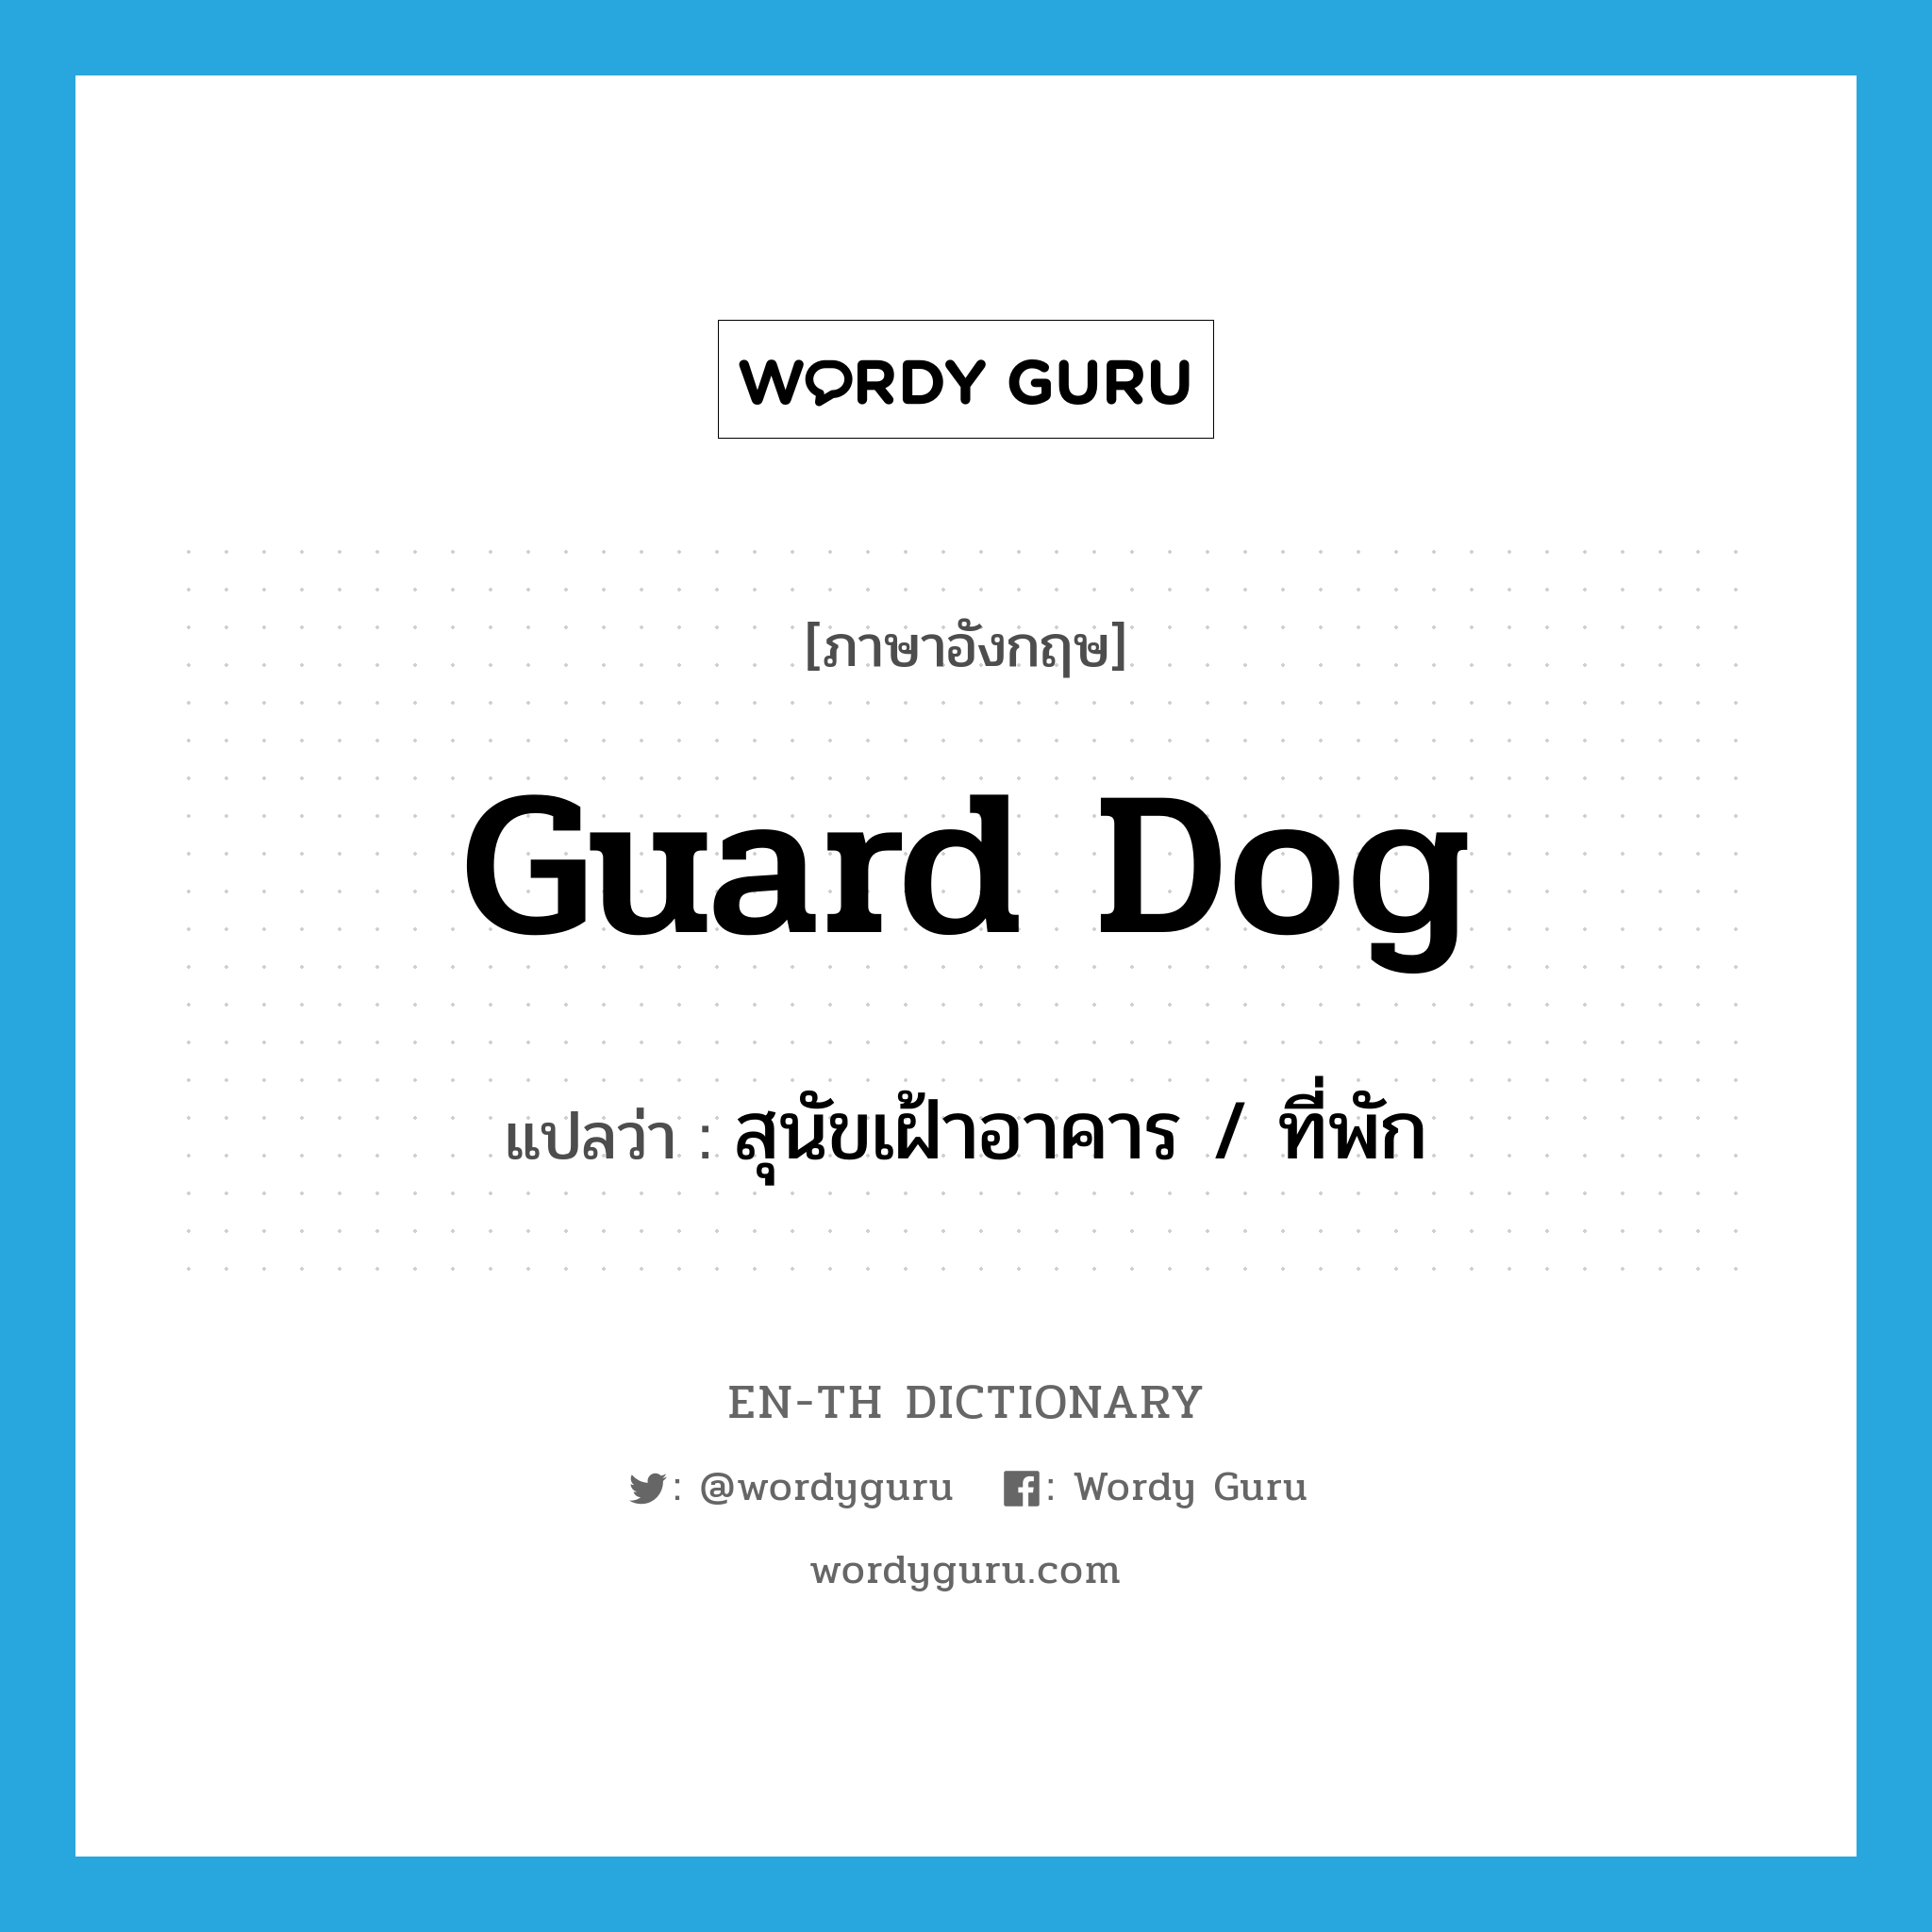 สุนัขเฝ้าอาคาร / ที่พัก ภาษาอังกฤษ?, คำศัพท์ภาษาอังกฤษ สุนัขเฝ้าอาคาร / ที่พัก แปลว่า guard dog ประเภท N หมวด N